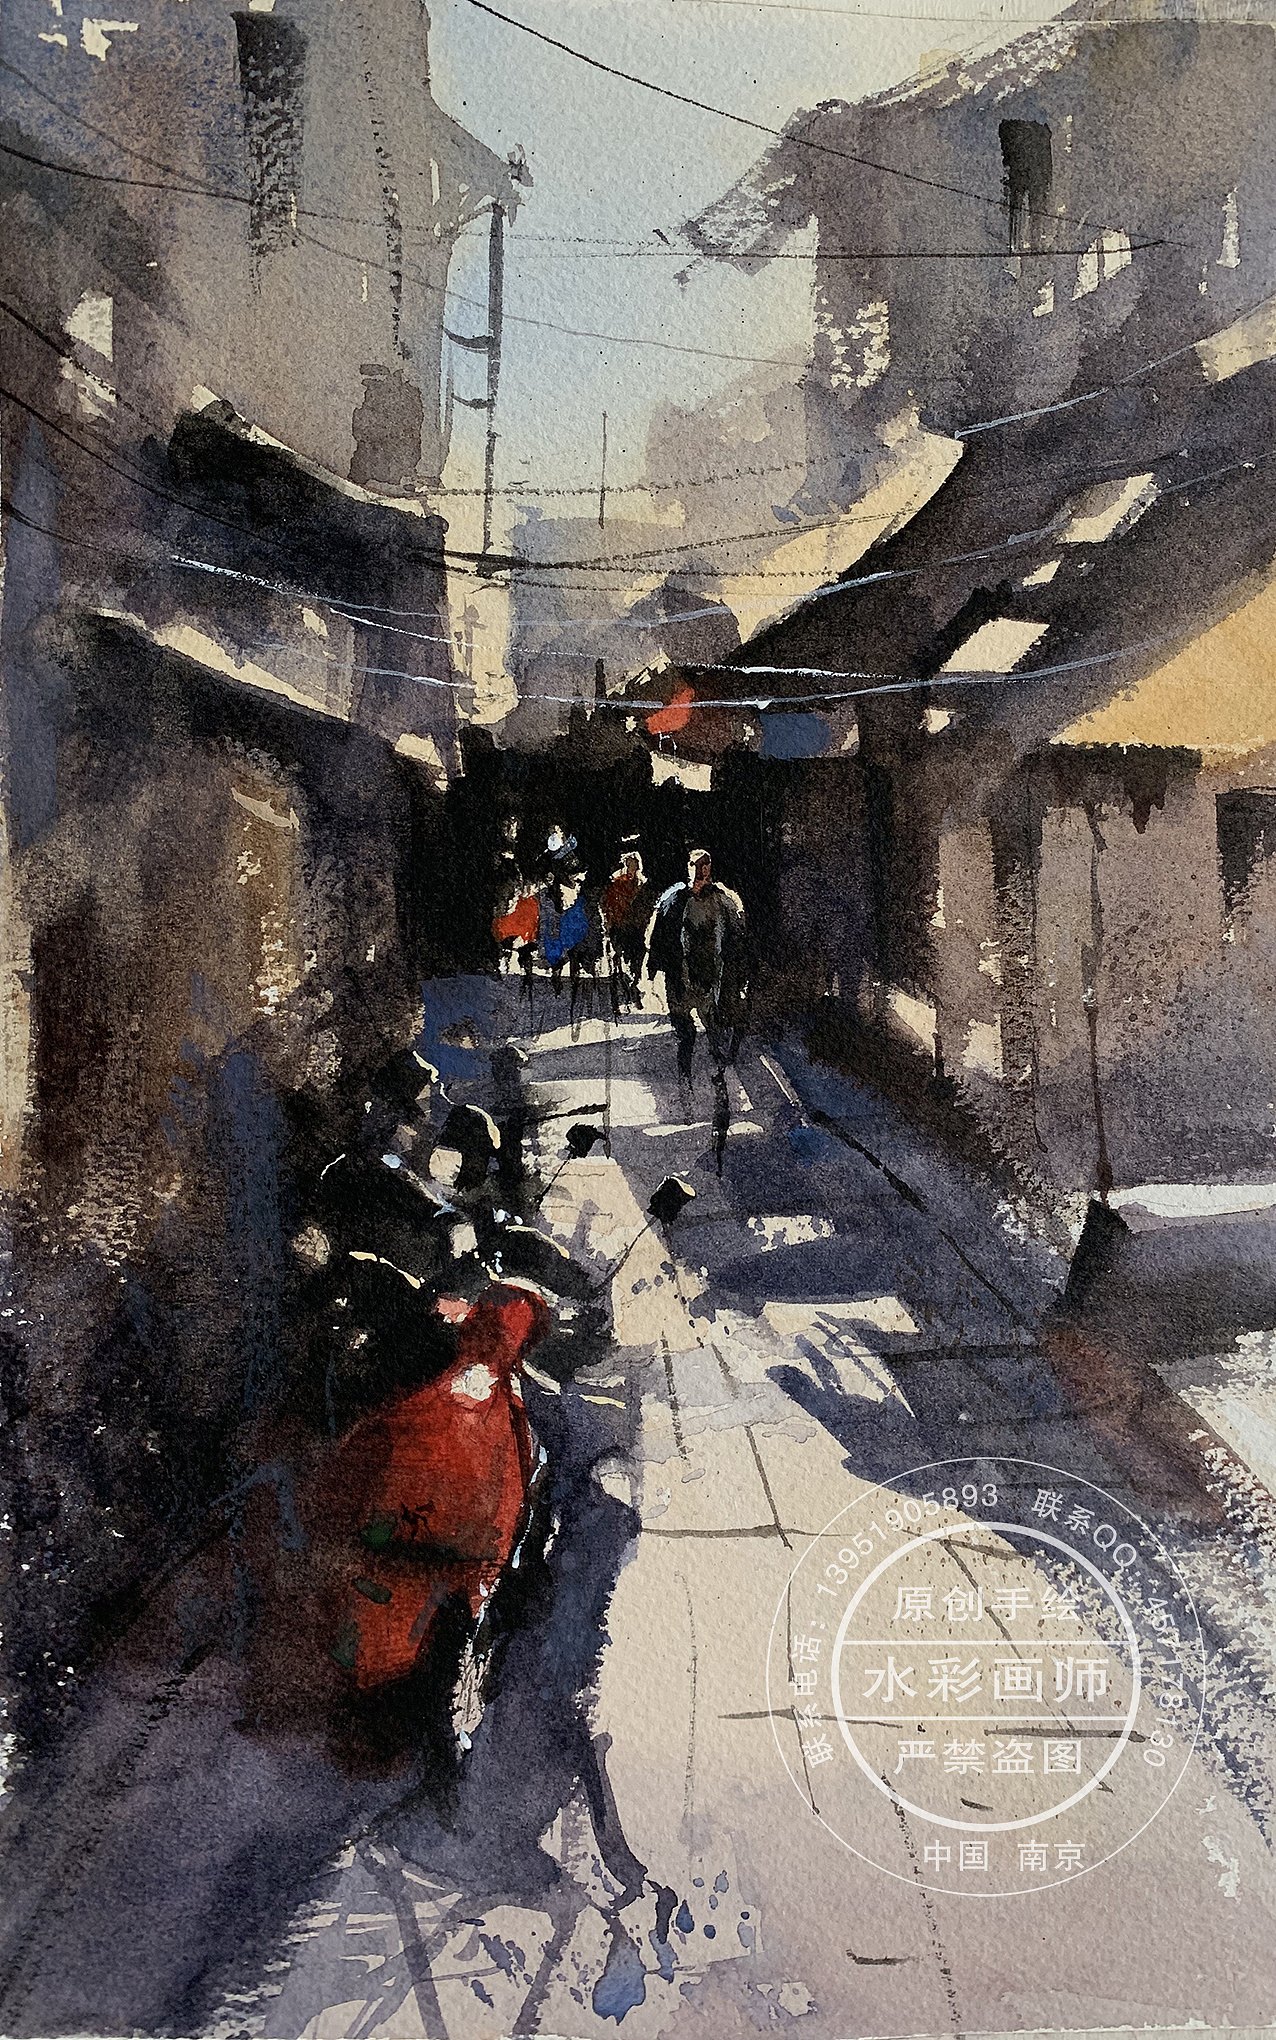 夏宇航水彩画《武昌的街巷》